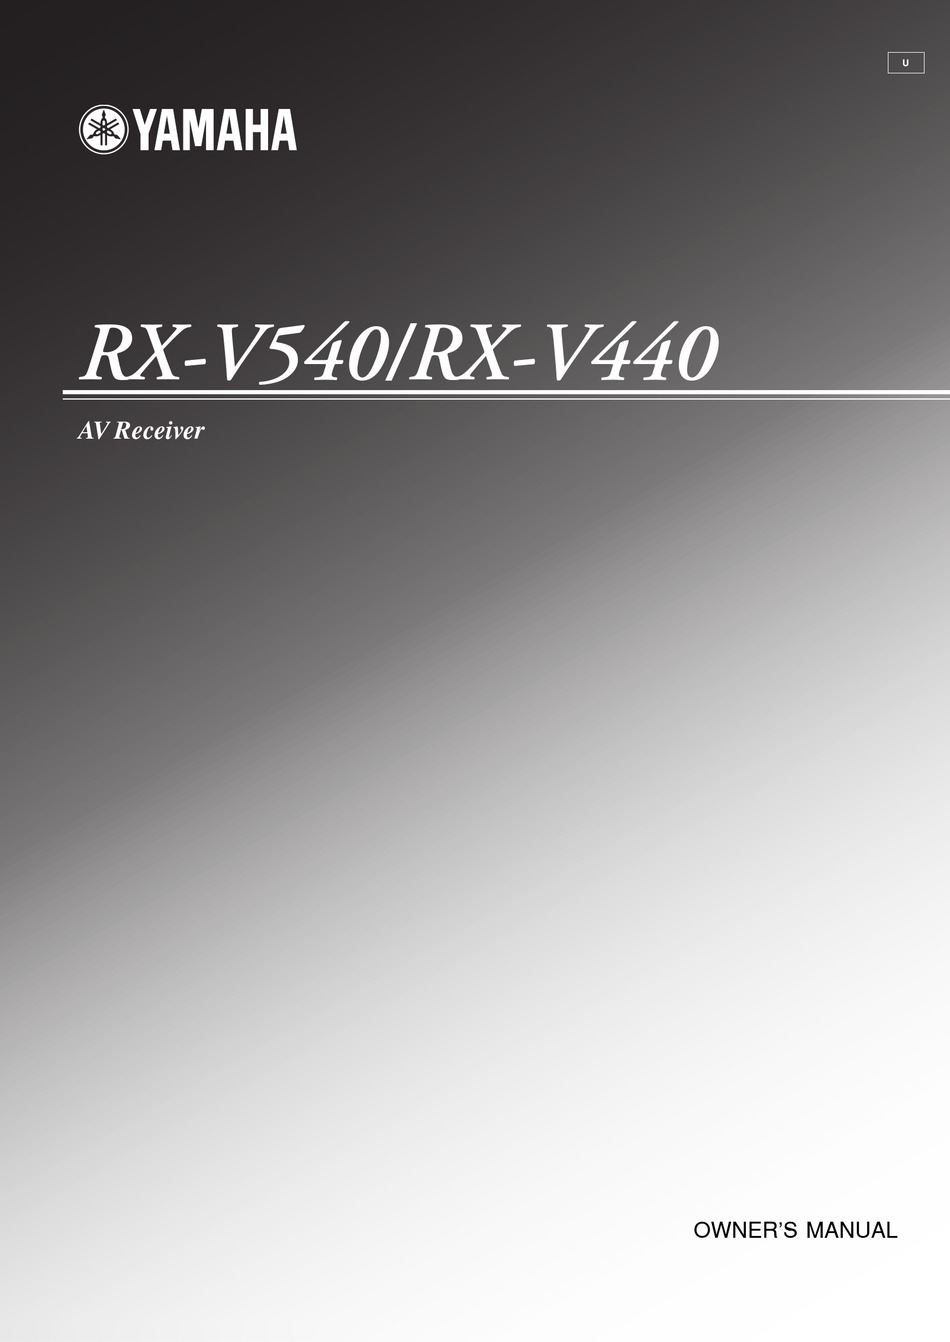 YAMAHA RX-V540 OWNER'S MANUAL Pdf Download | ManualsLib